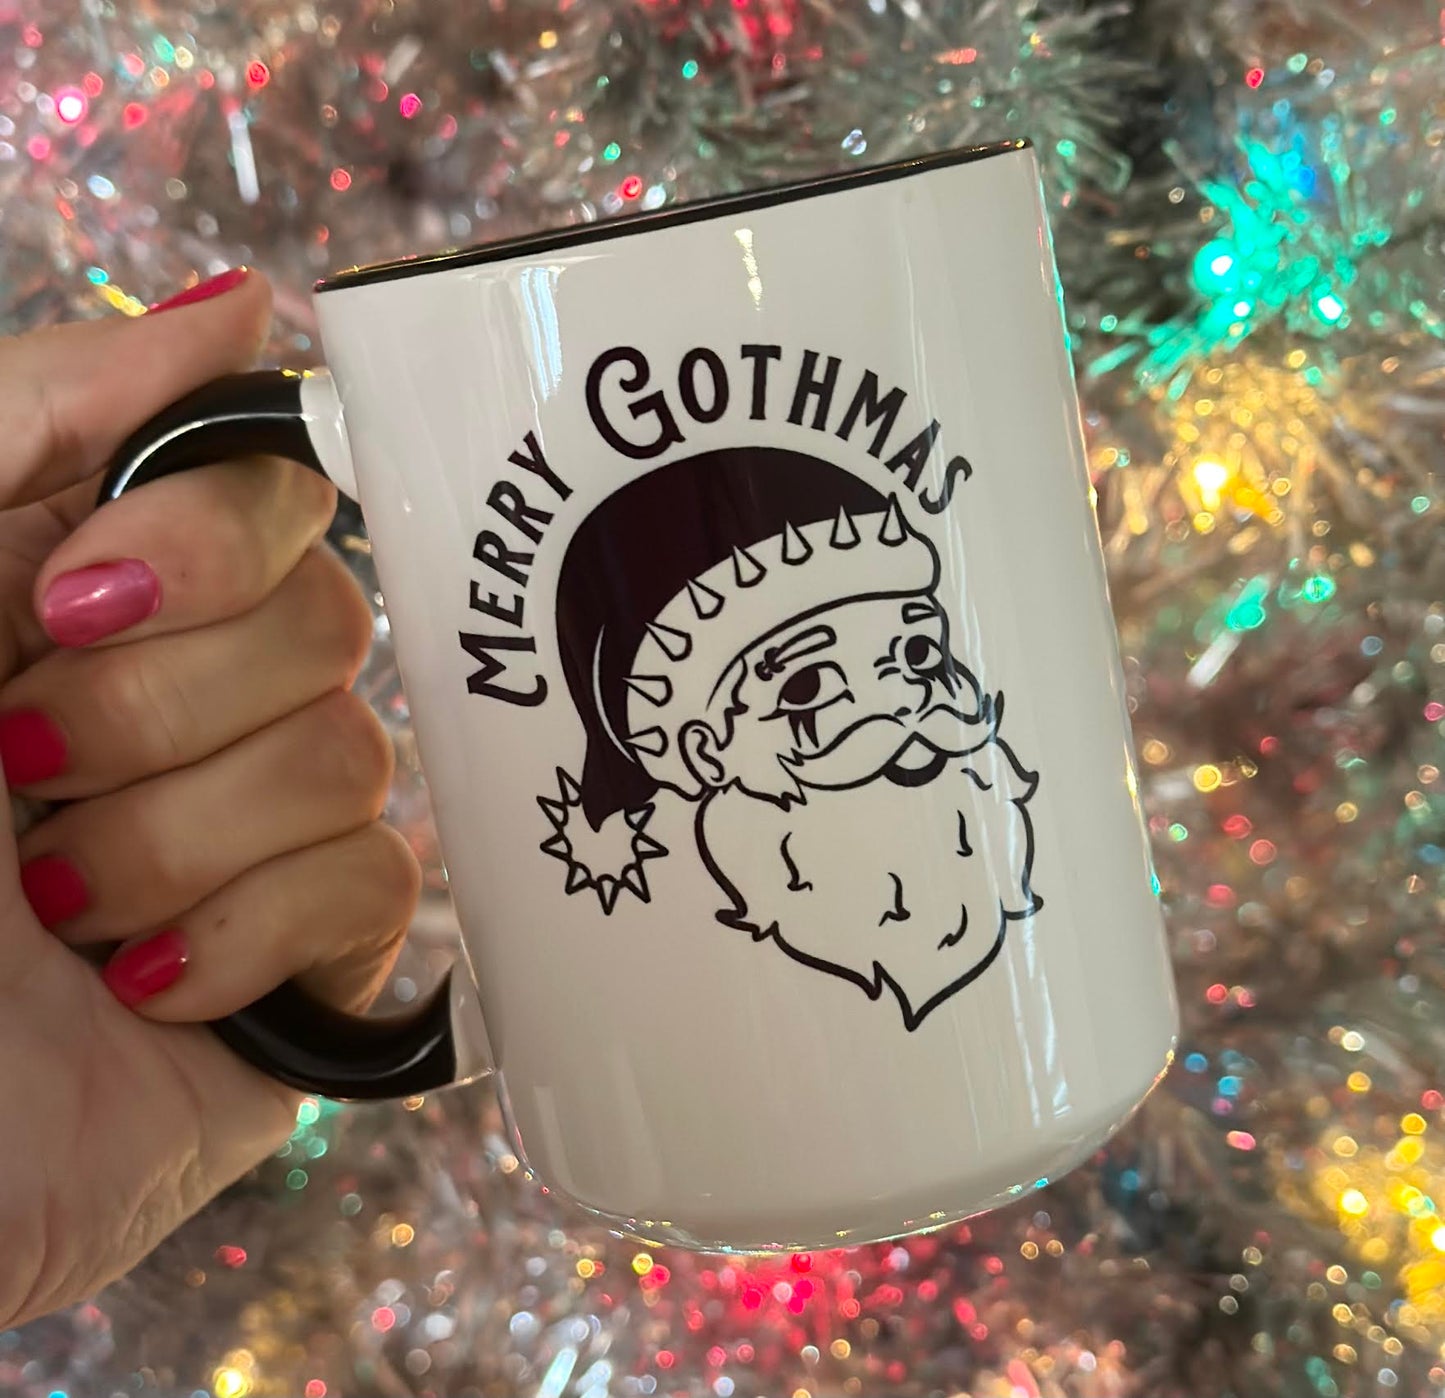 Merry Gothmas 15 oz Mug